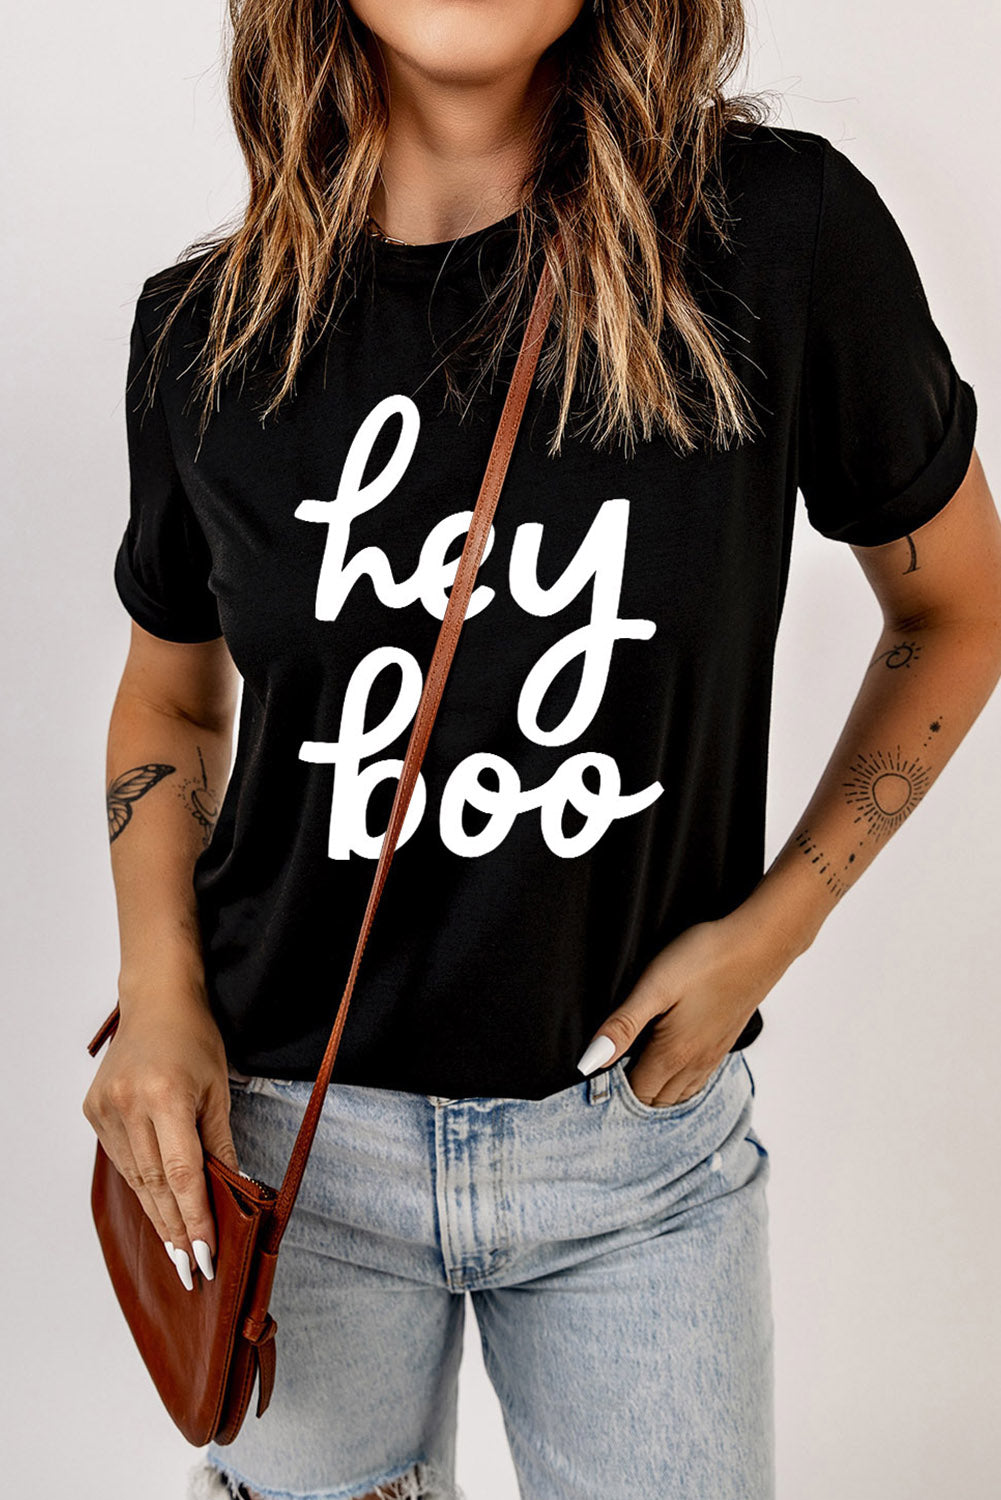 HEY BOO Graphic T-Shirt